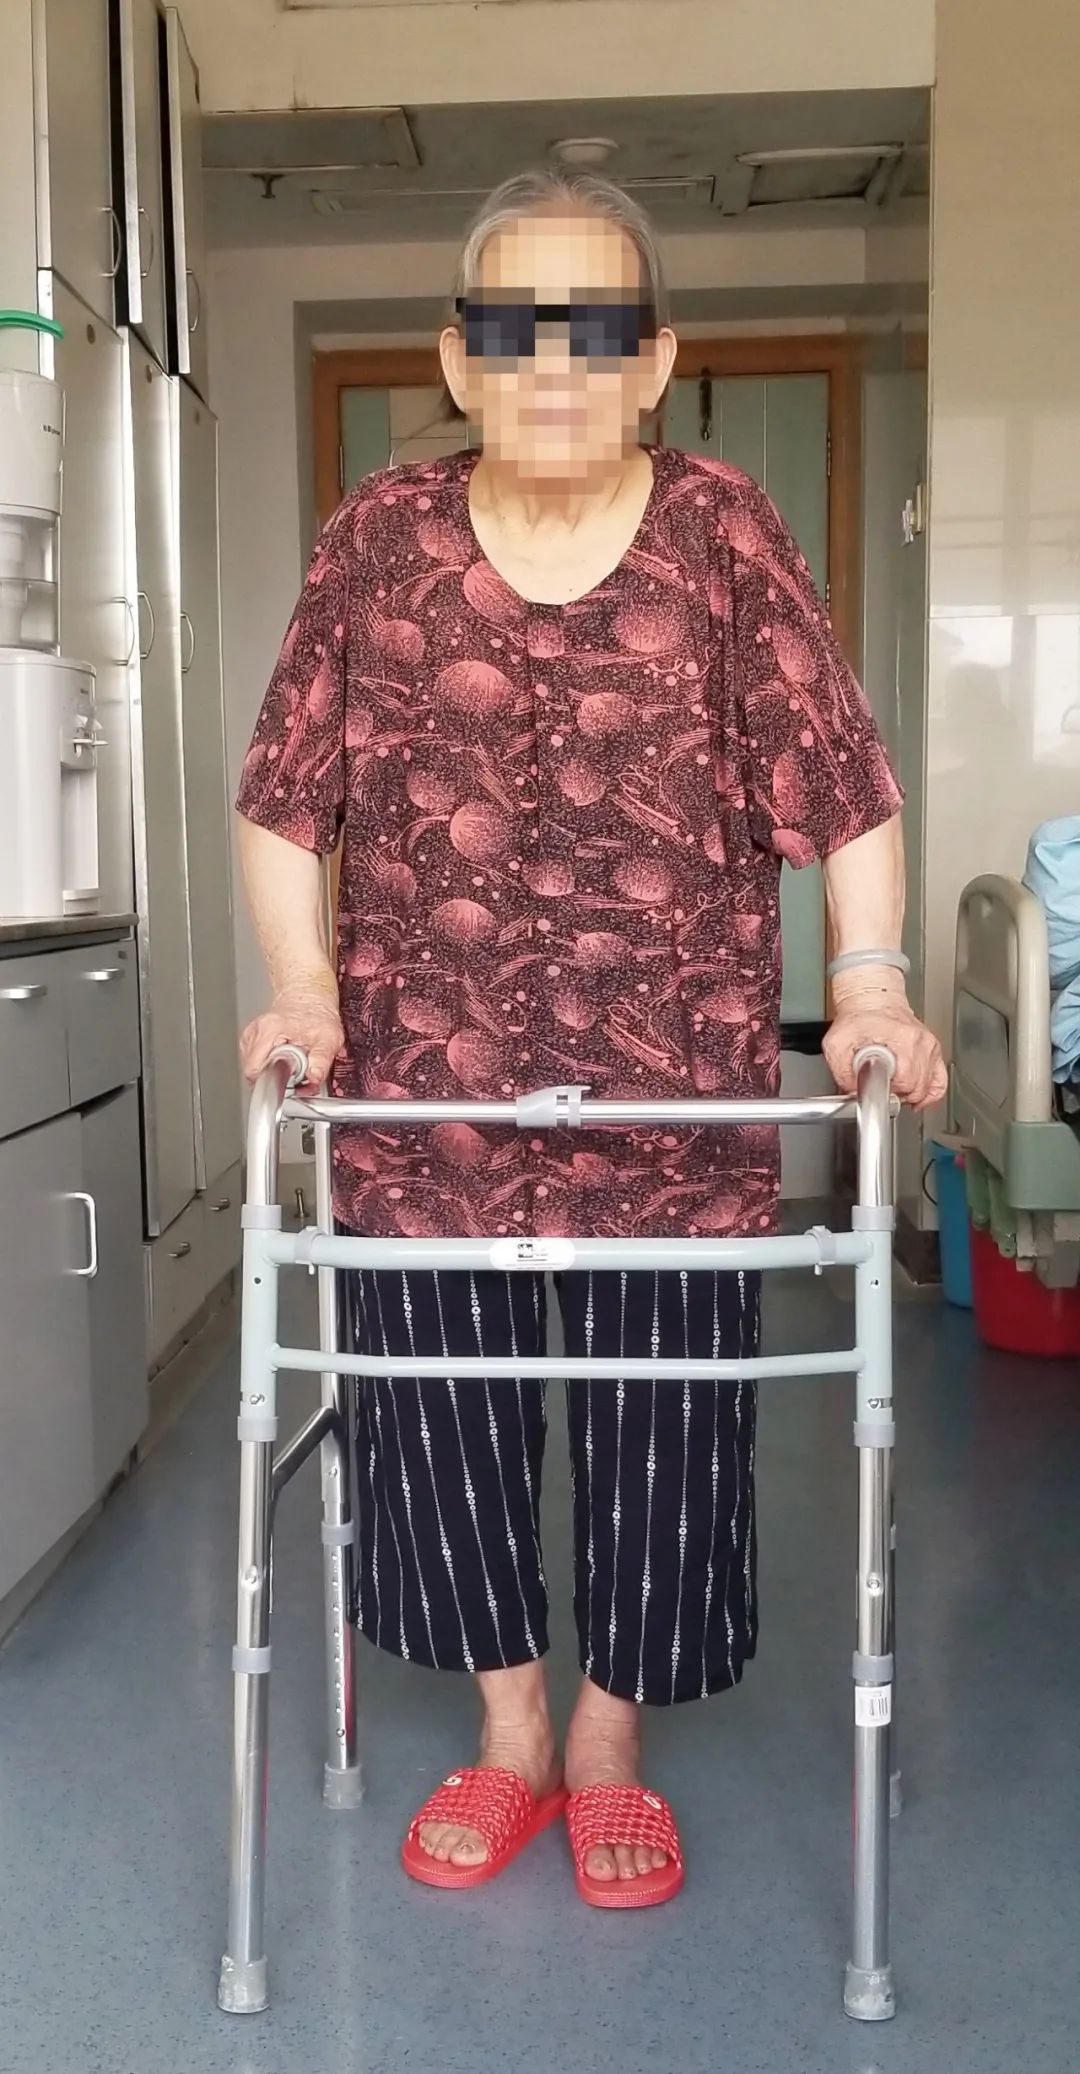 桂林医学院附属医院 3D 打印技术助力 92 岁患者进行高难度手术并快速康复